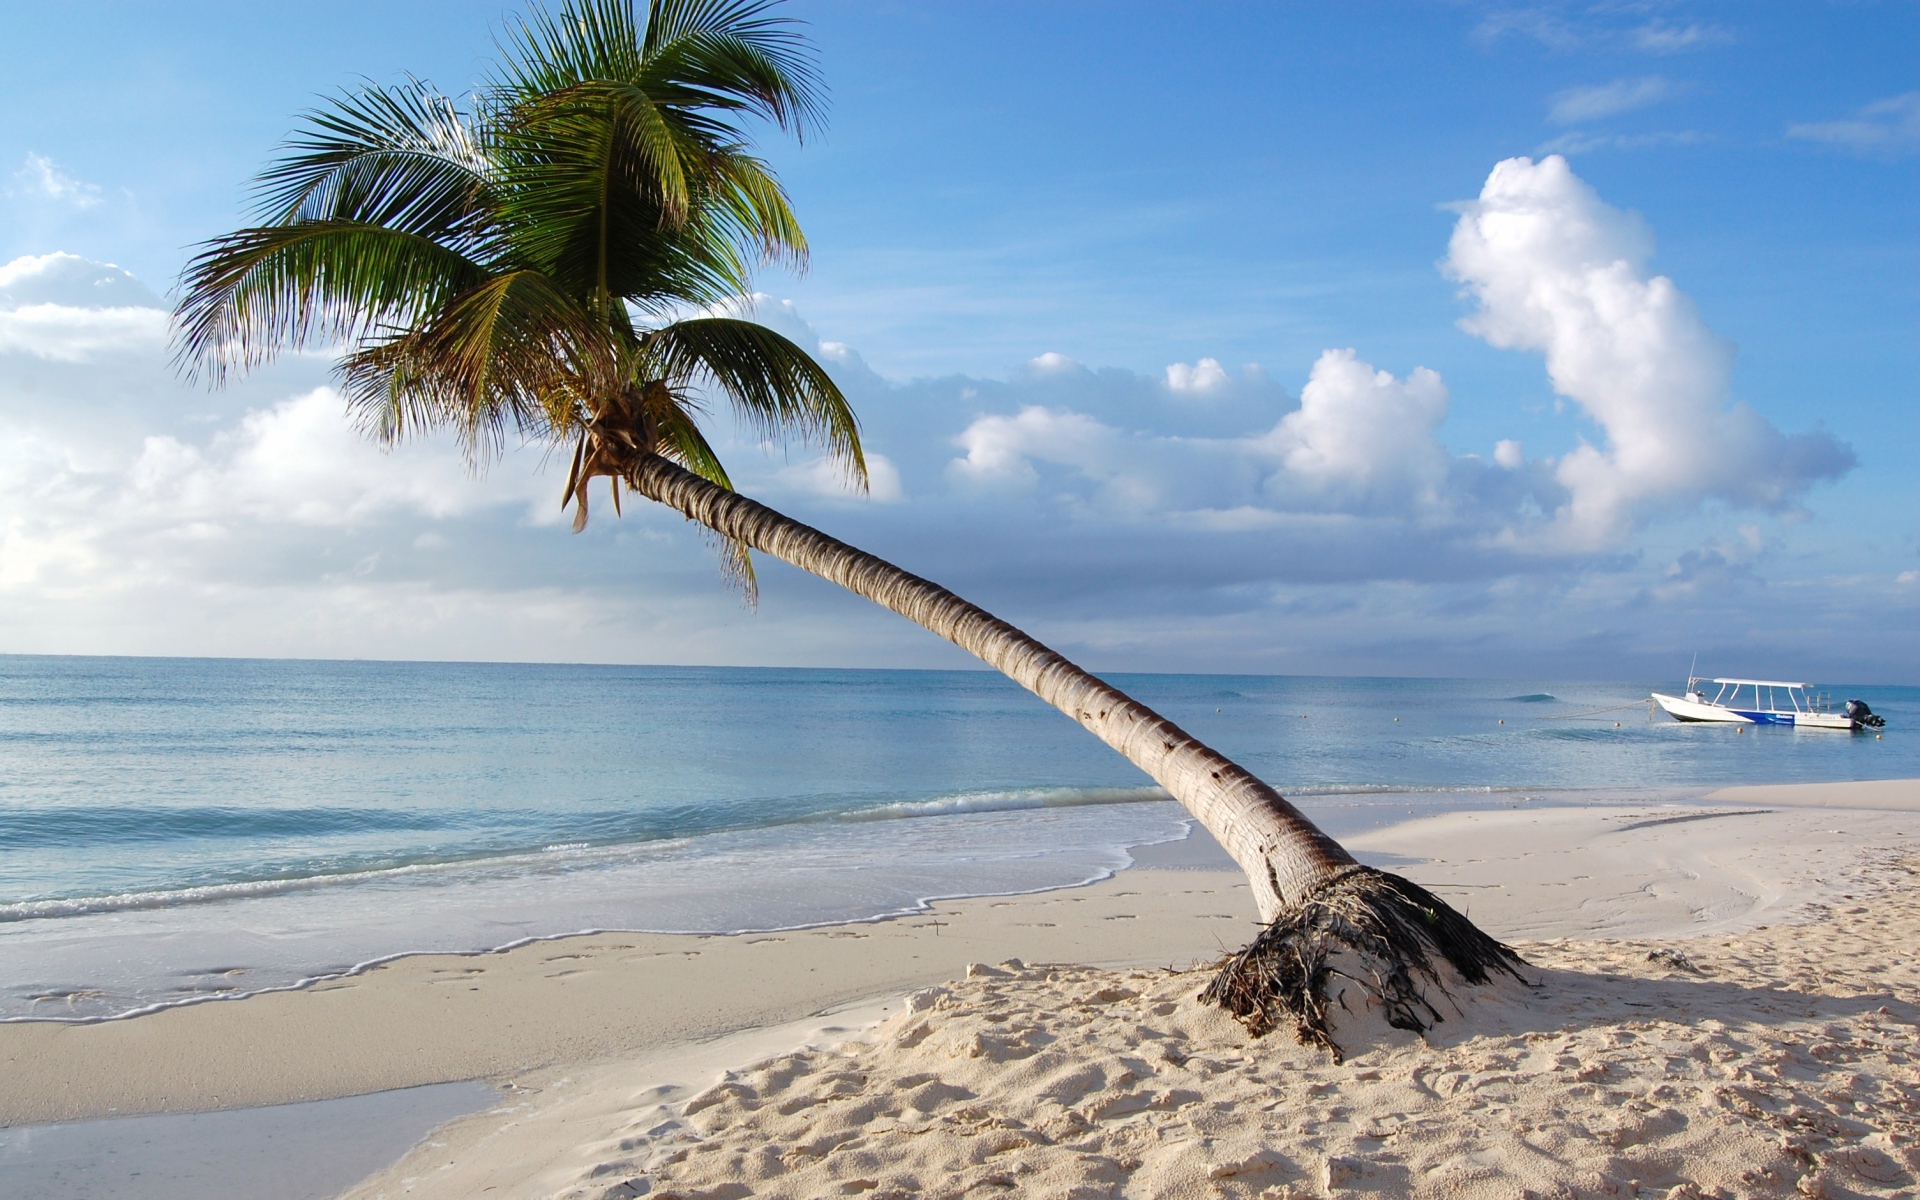 Картинки Maldives, тропические, пляж, пальмы фото и обои на рабочий стол